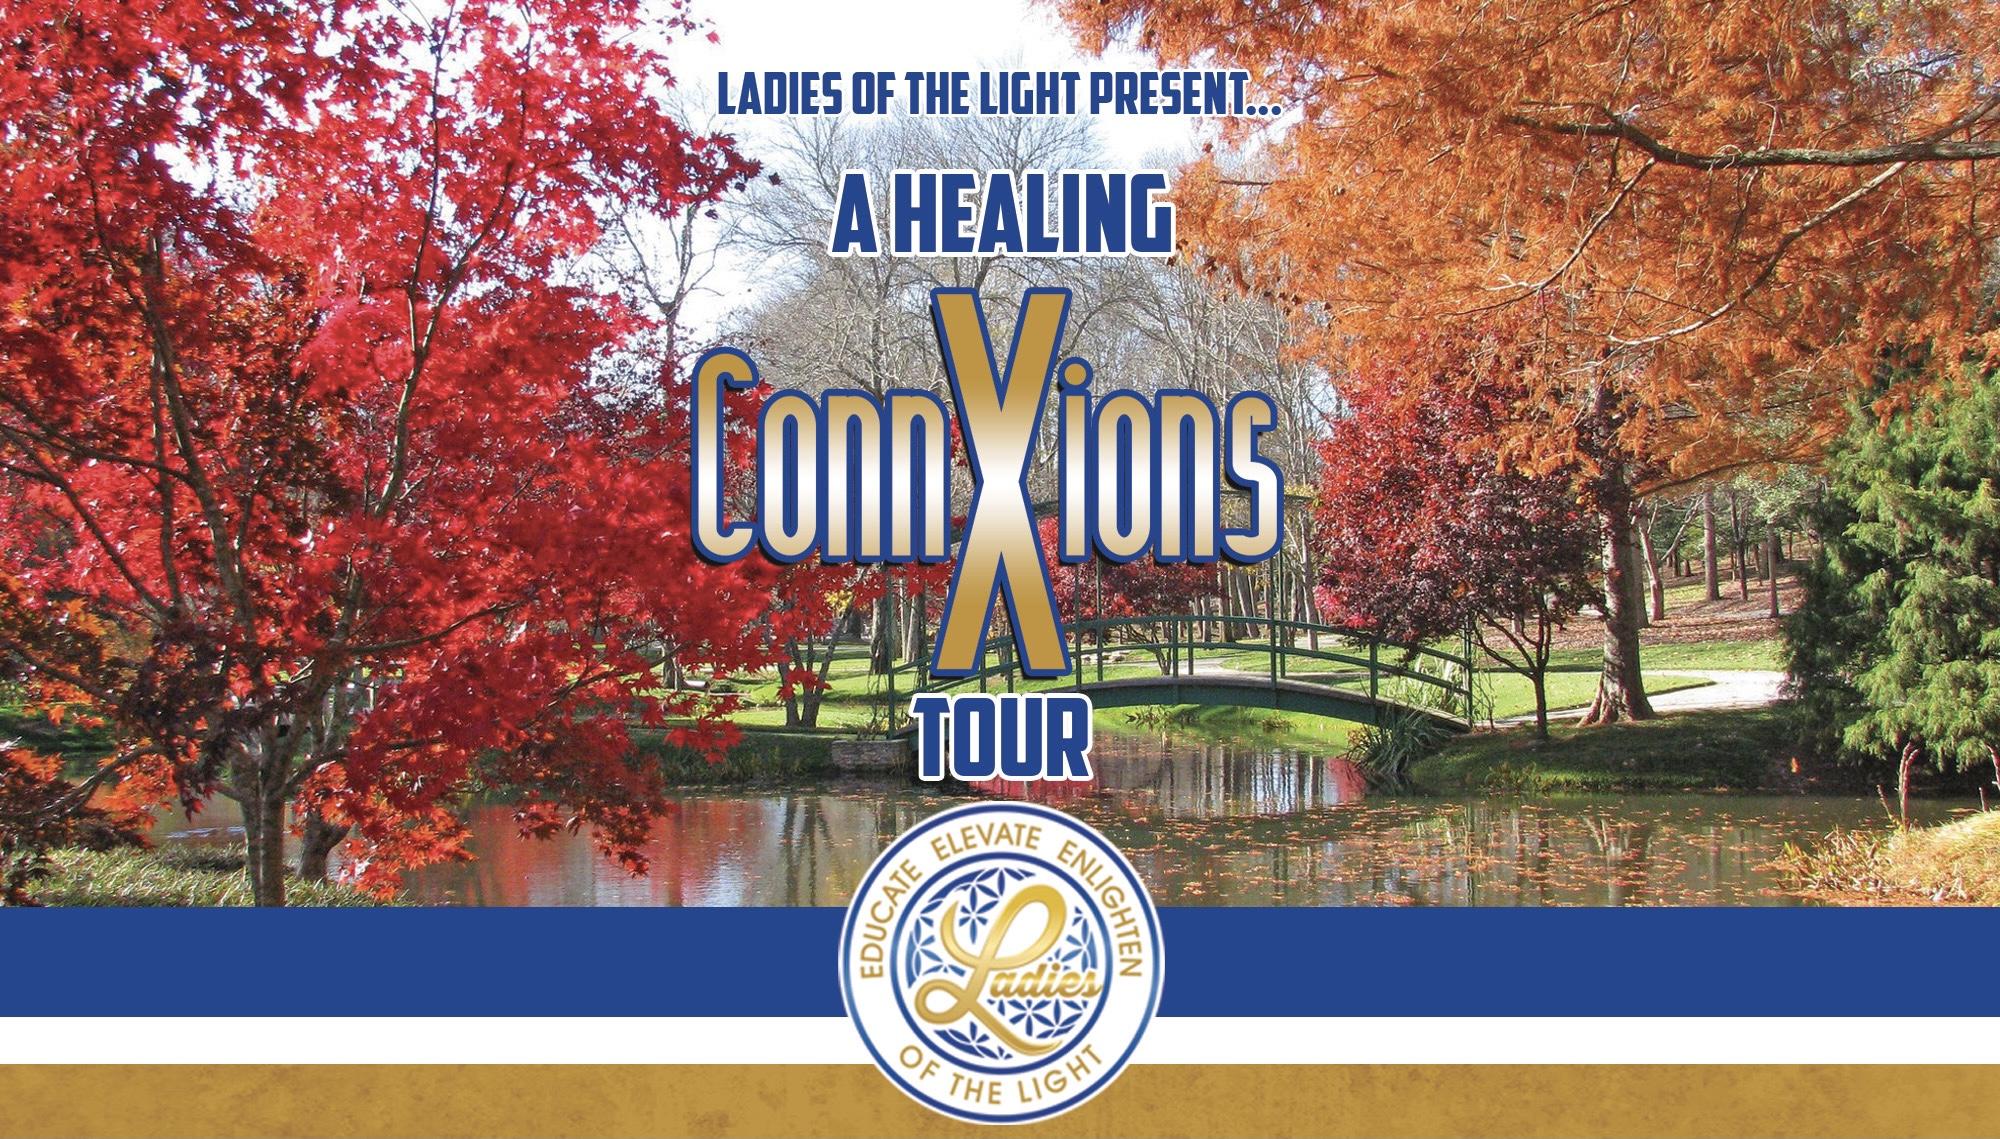 A Healing ConnXions Tour- Atlanta, GA